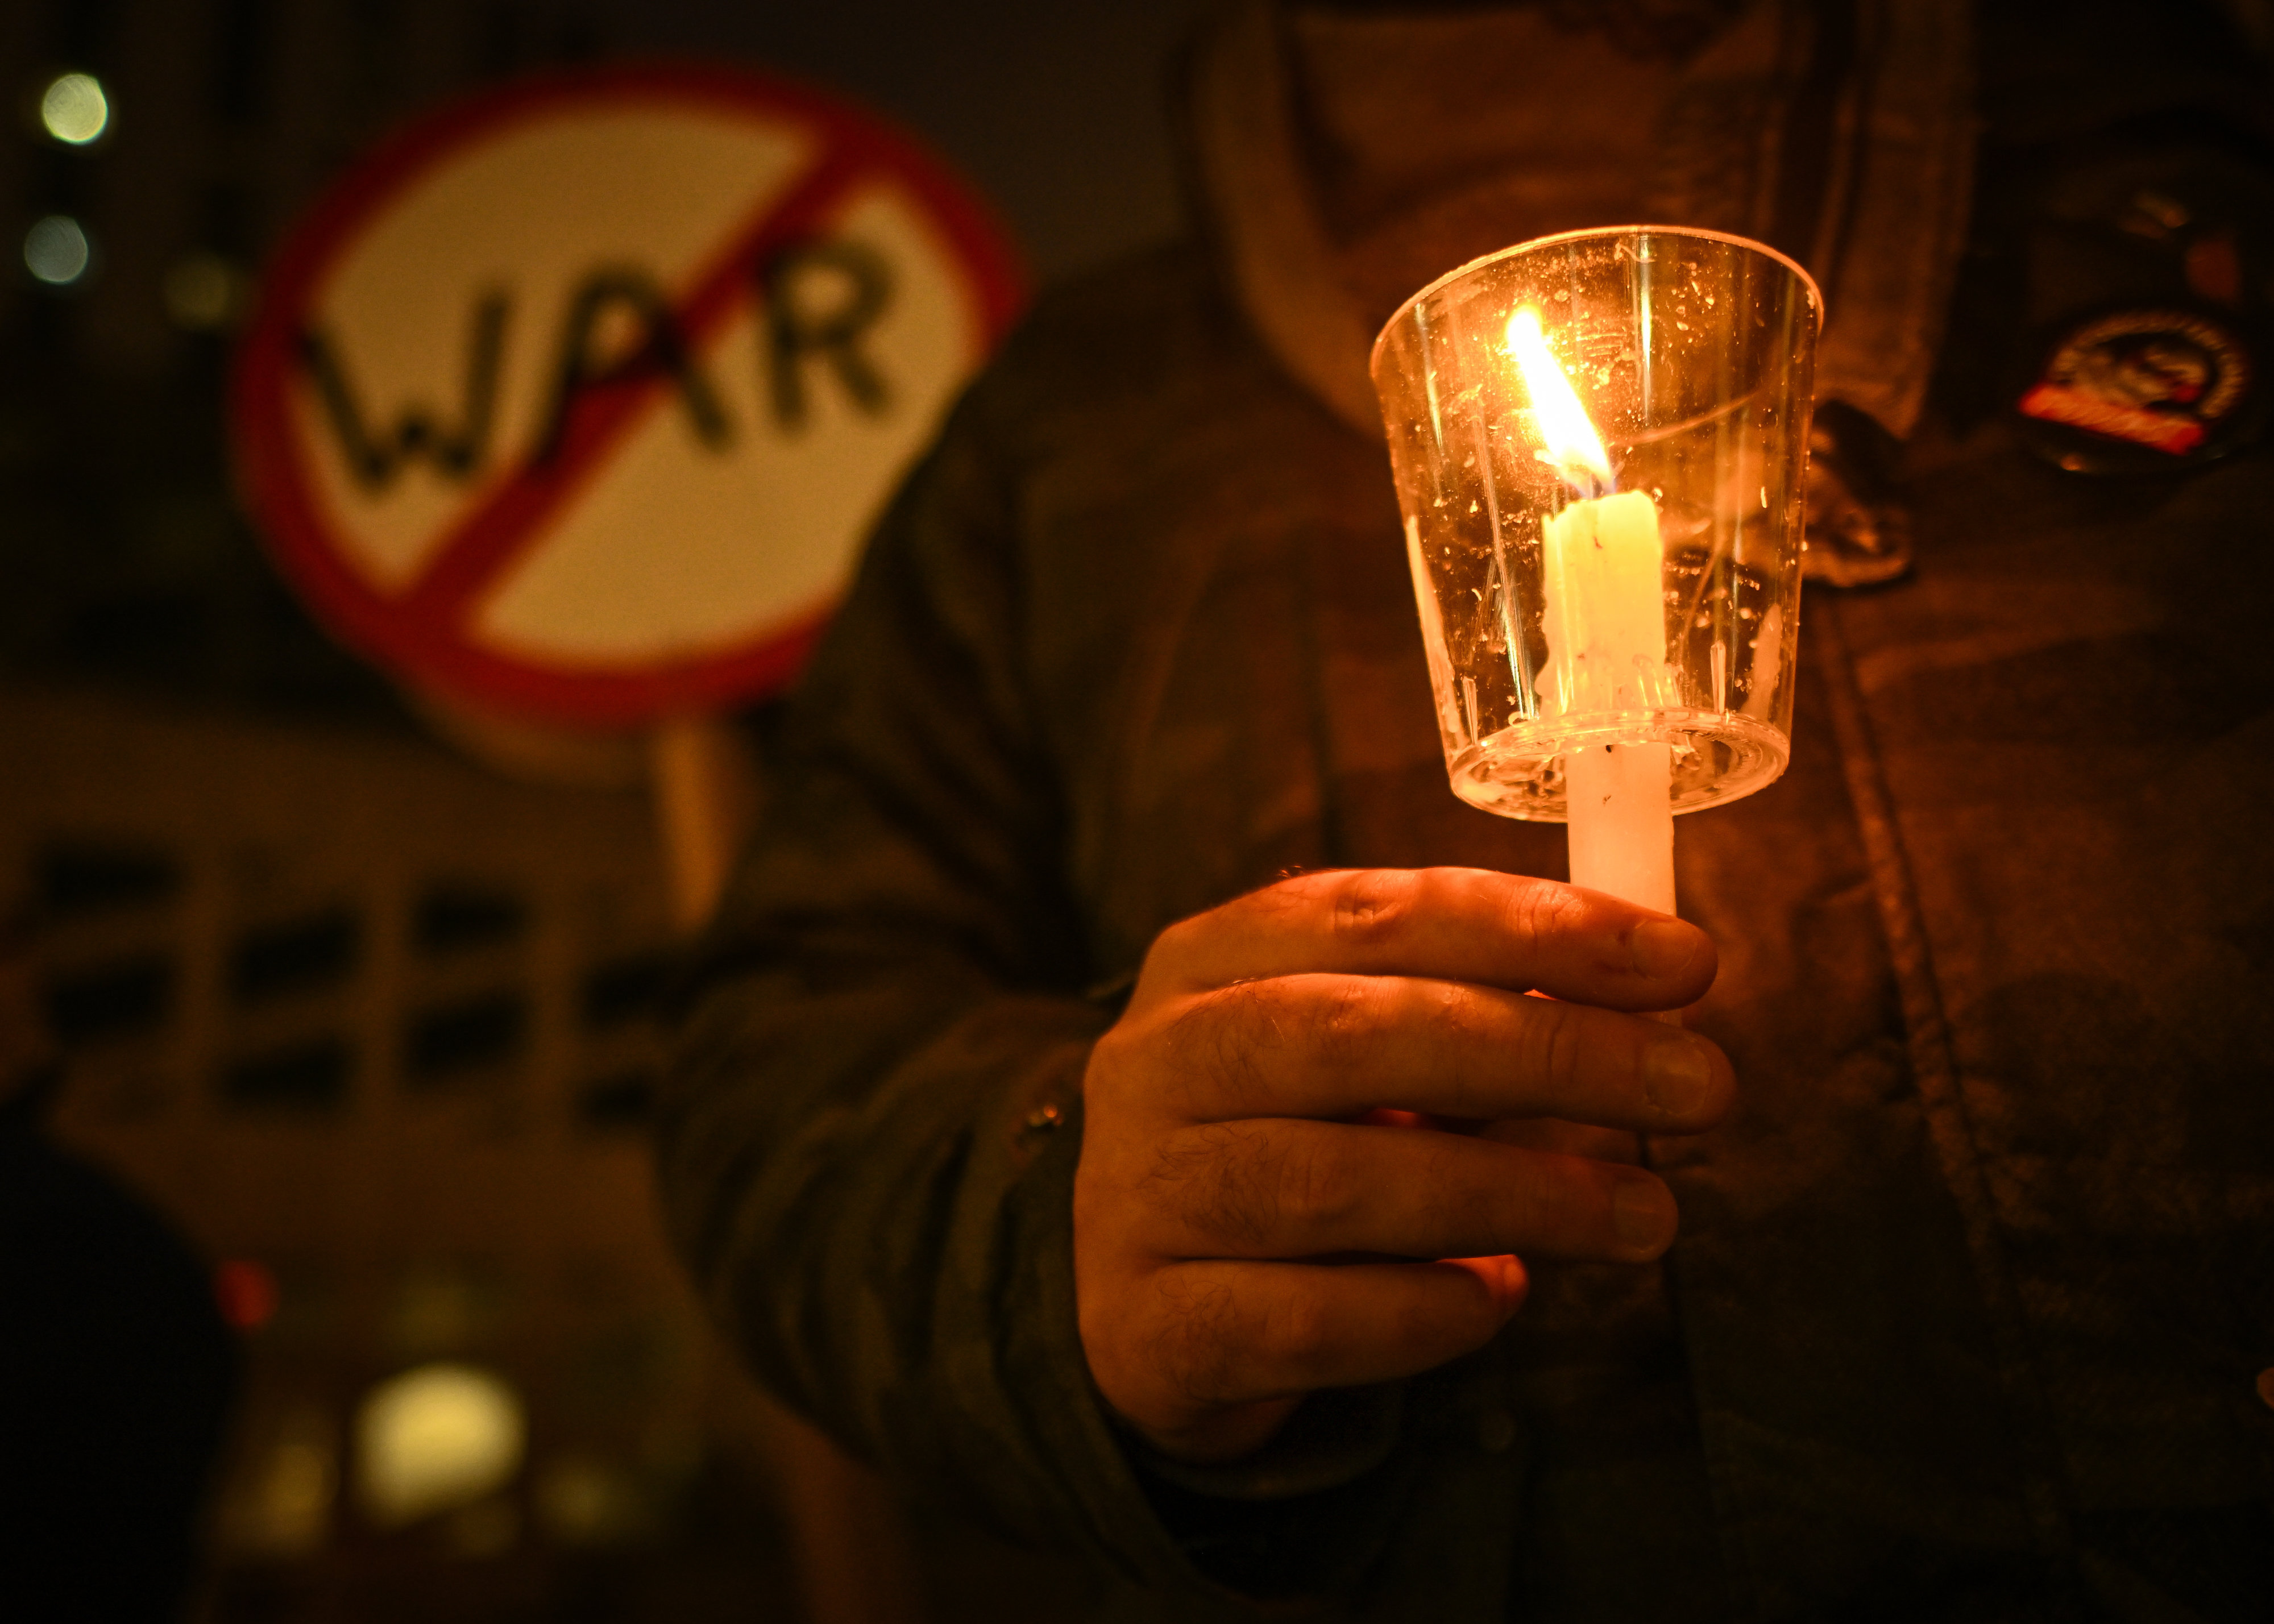 Nahaufnahme eines Menschen, der eine Kerze hält. Hinter ihm ein Schild auf dem durchgestrichen "Krieg" steht